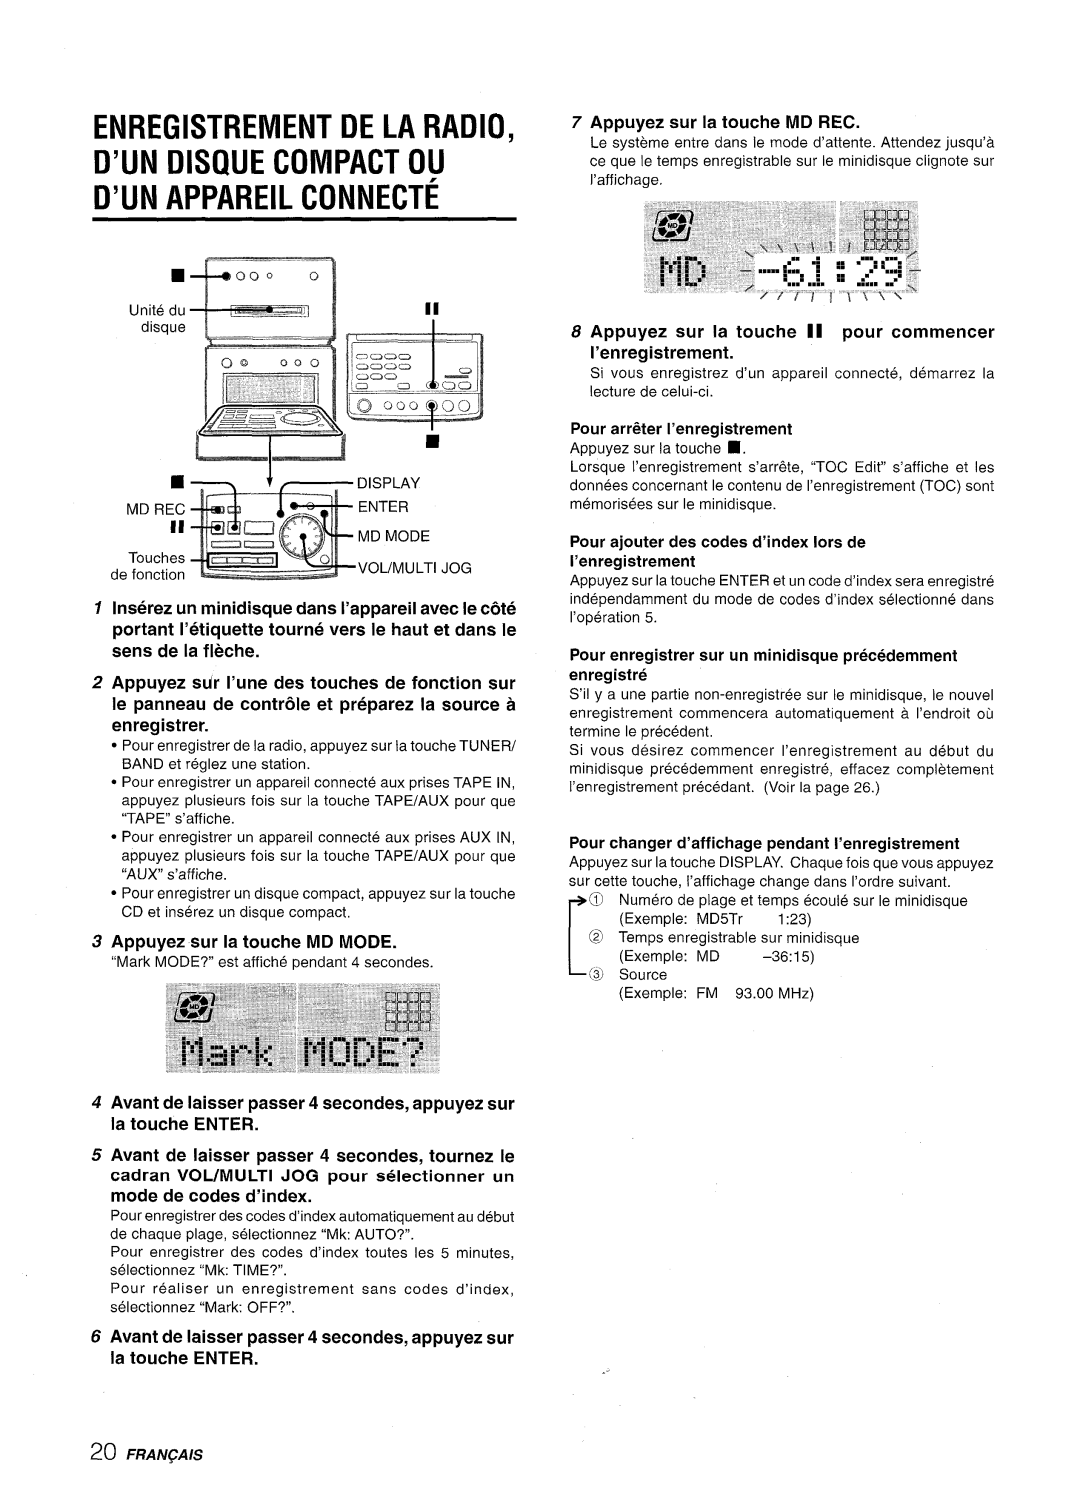 Aiwa XR-MD95 manual Enregistrement De La Radio D’Un Disoue Compact Ou, D’Un Appareil Connecte, Appuyez sur la touche MD REC 